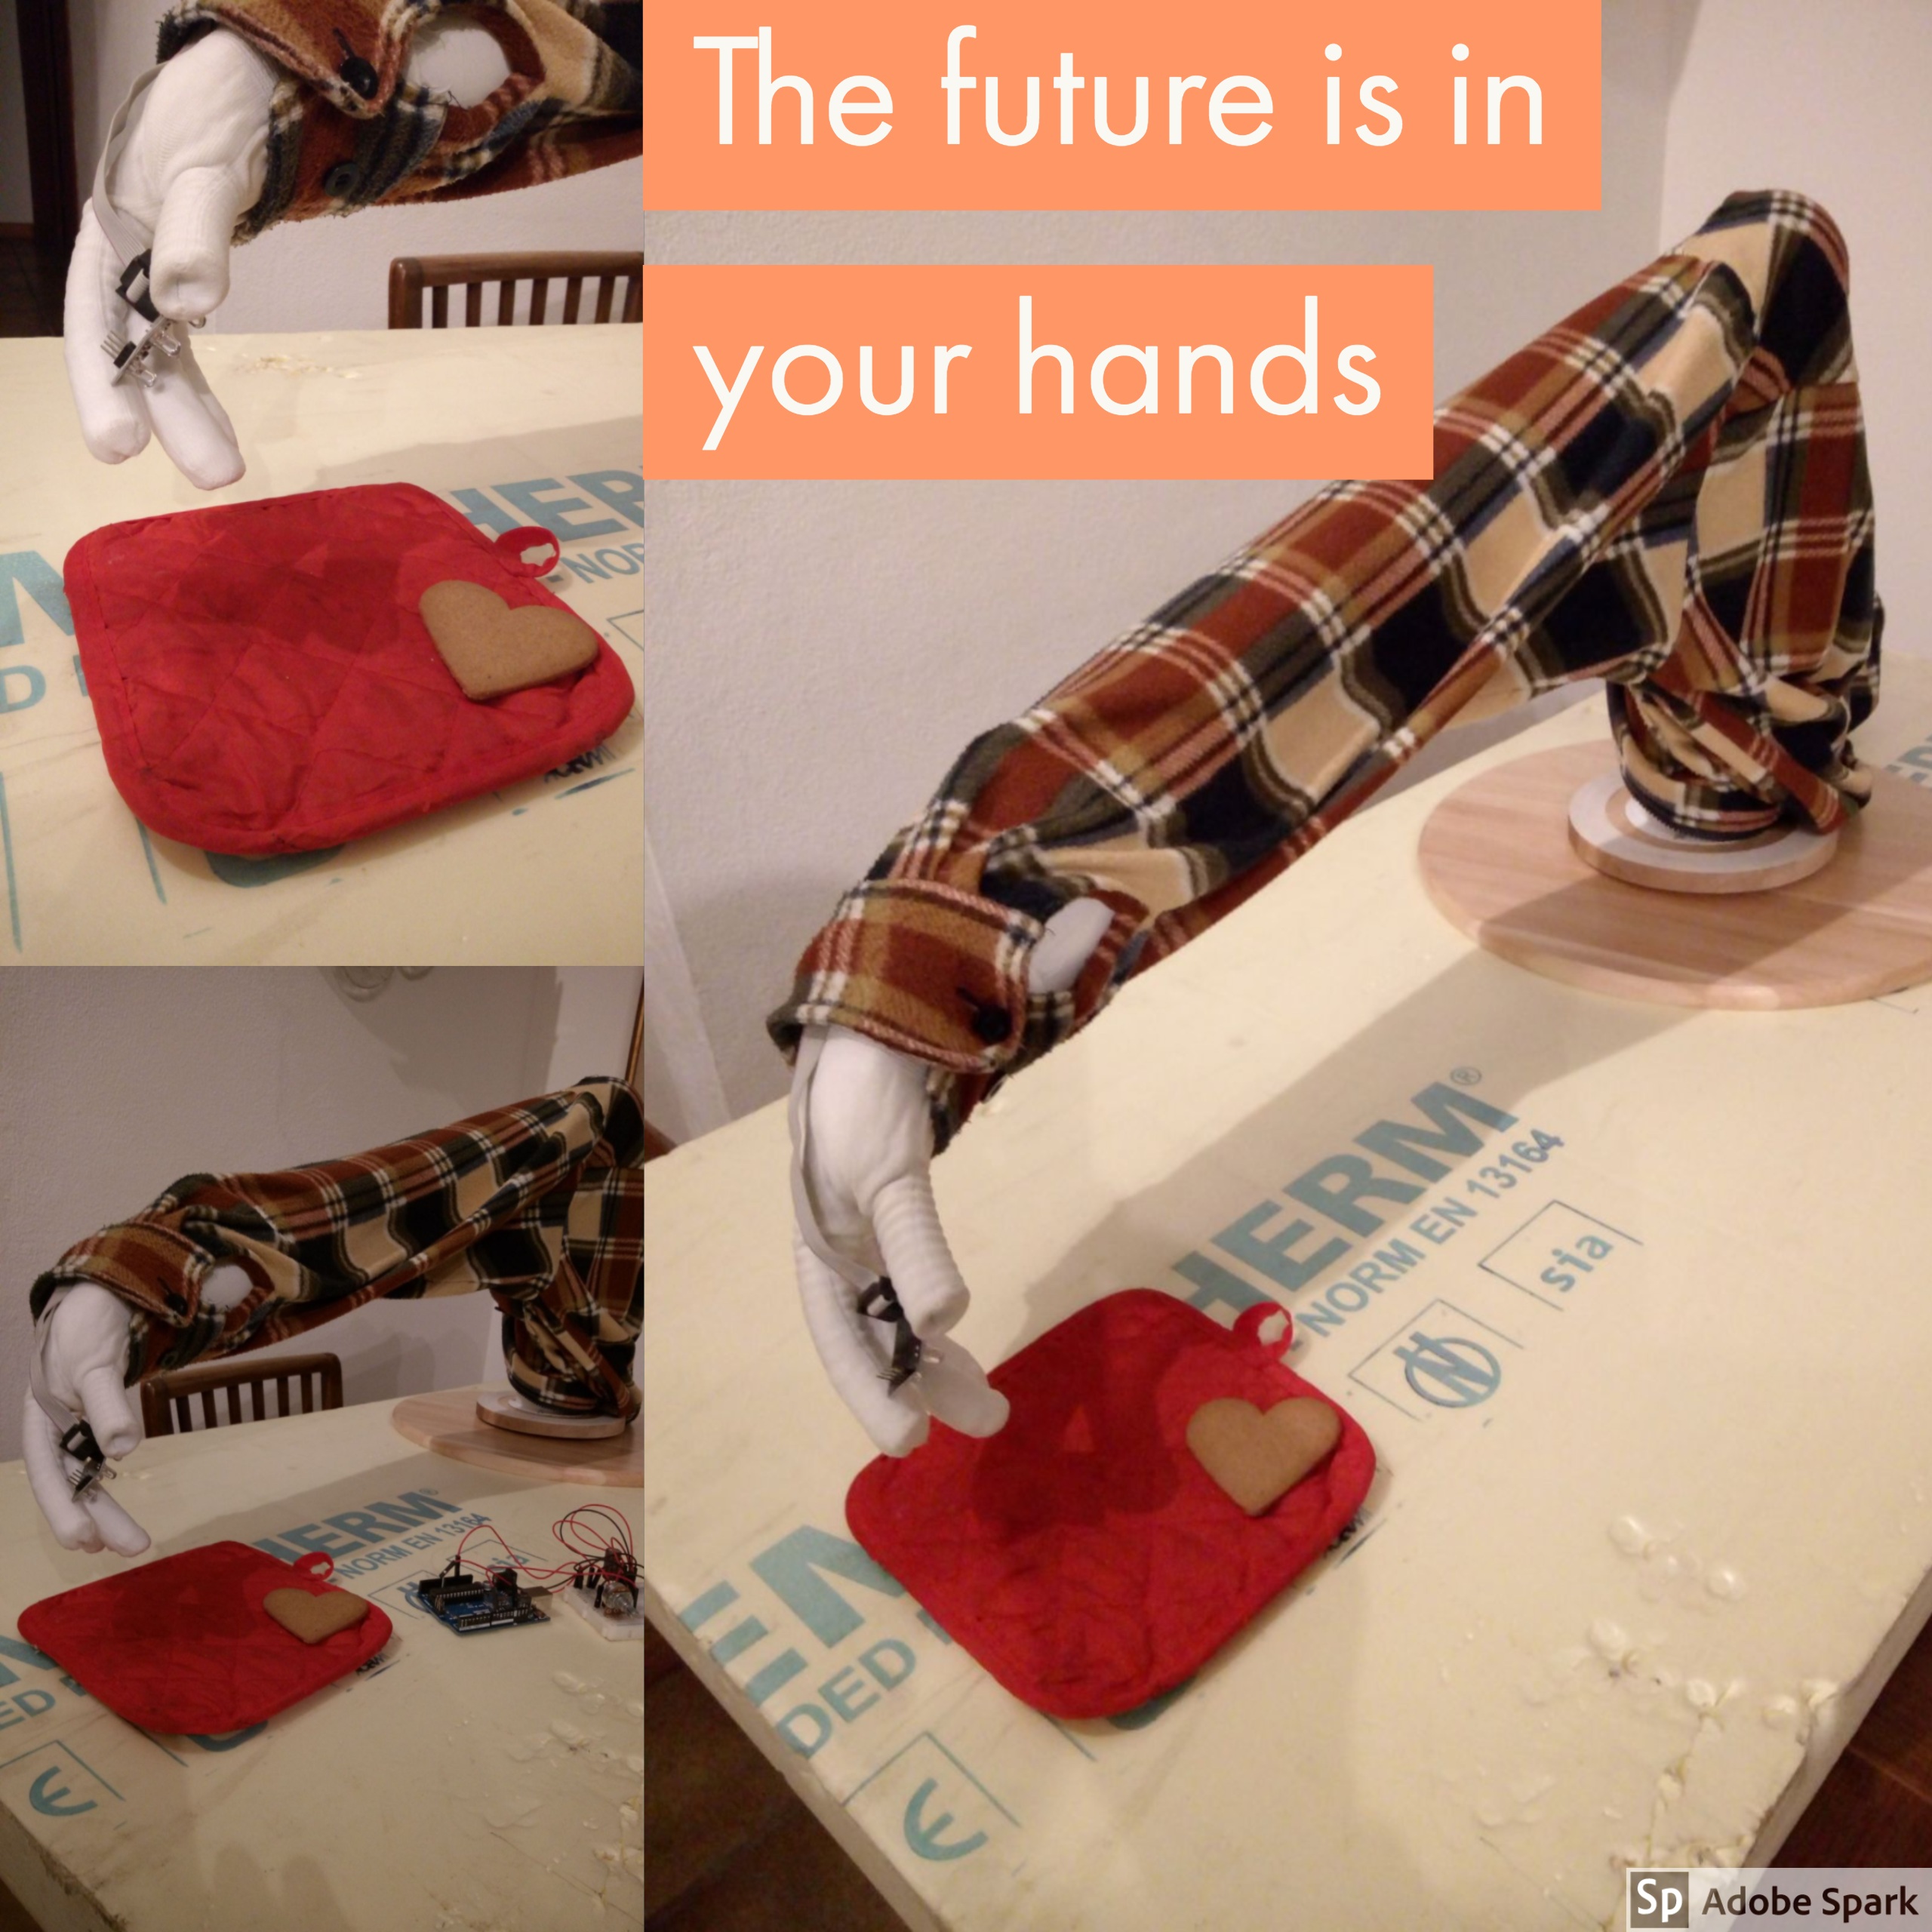 The future is in your hands (Dalai Lama), il futuro è nelle vostre mani: il futuro è una mano robotica che non solo si muove ma legge i colori e le emozioni 